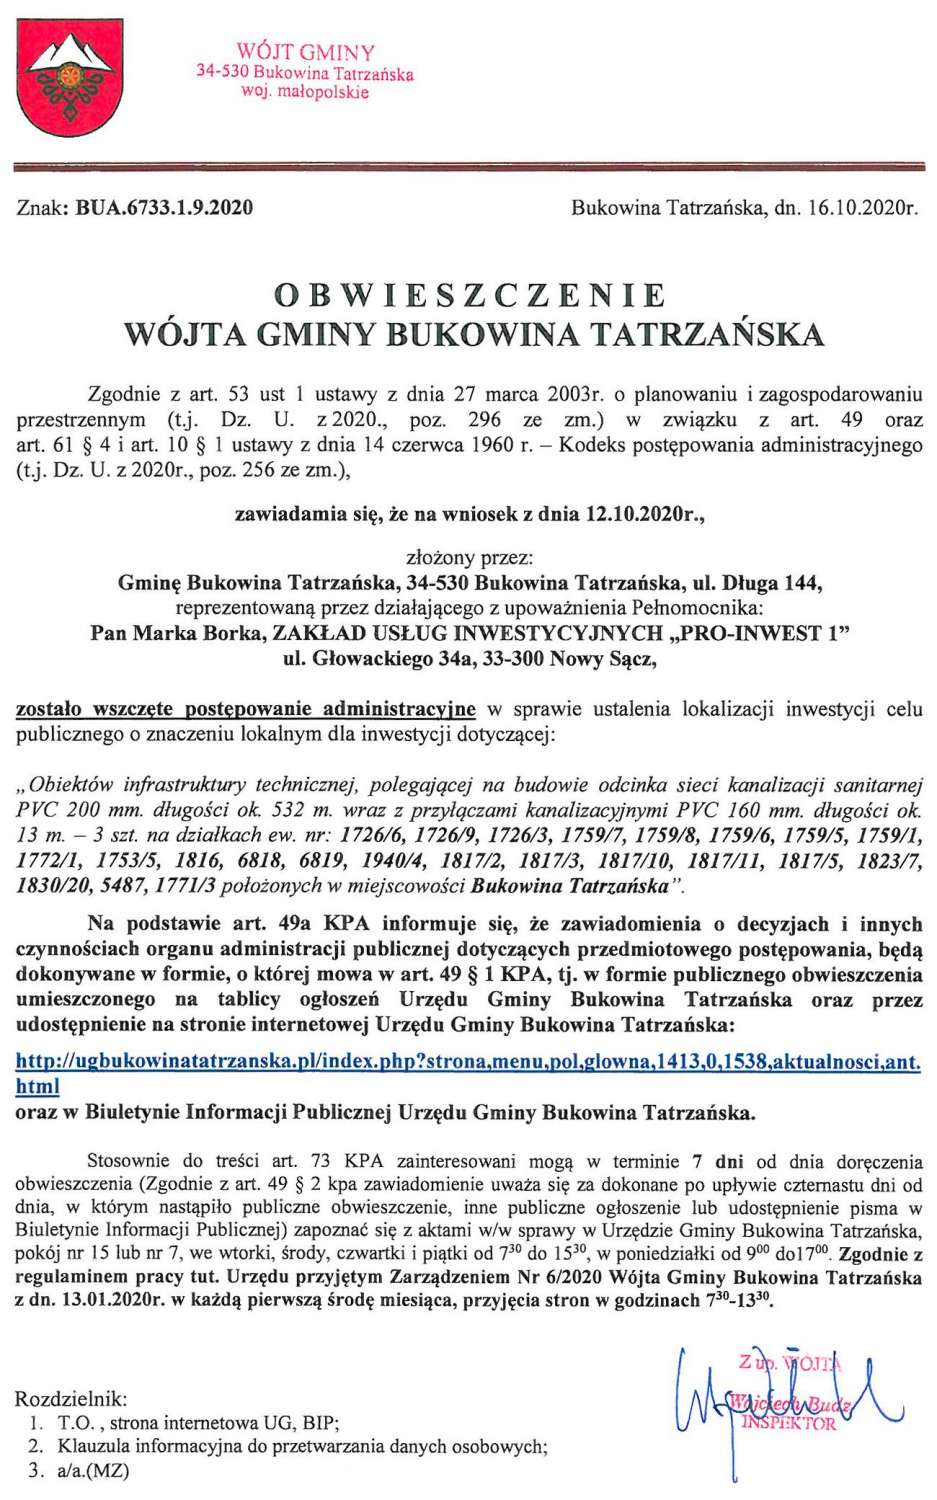 Obwieszczenie Wójta Gminy Bukowina Tatrzańska BUA 6733.1.9.2020